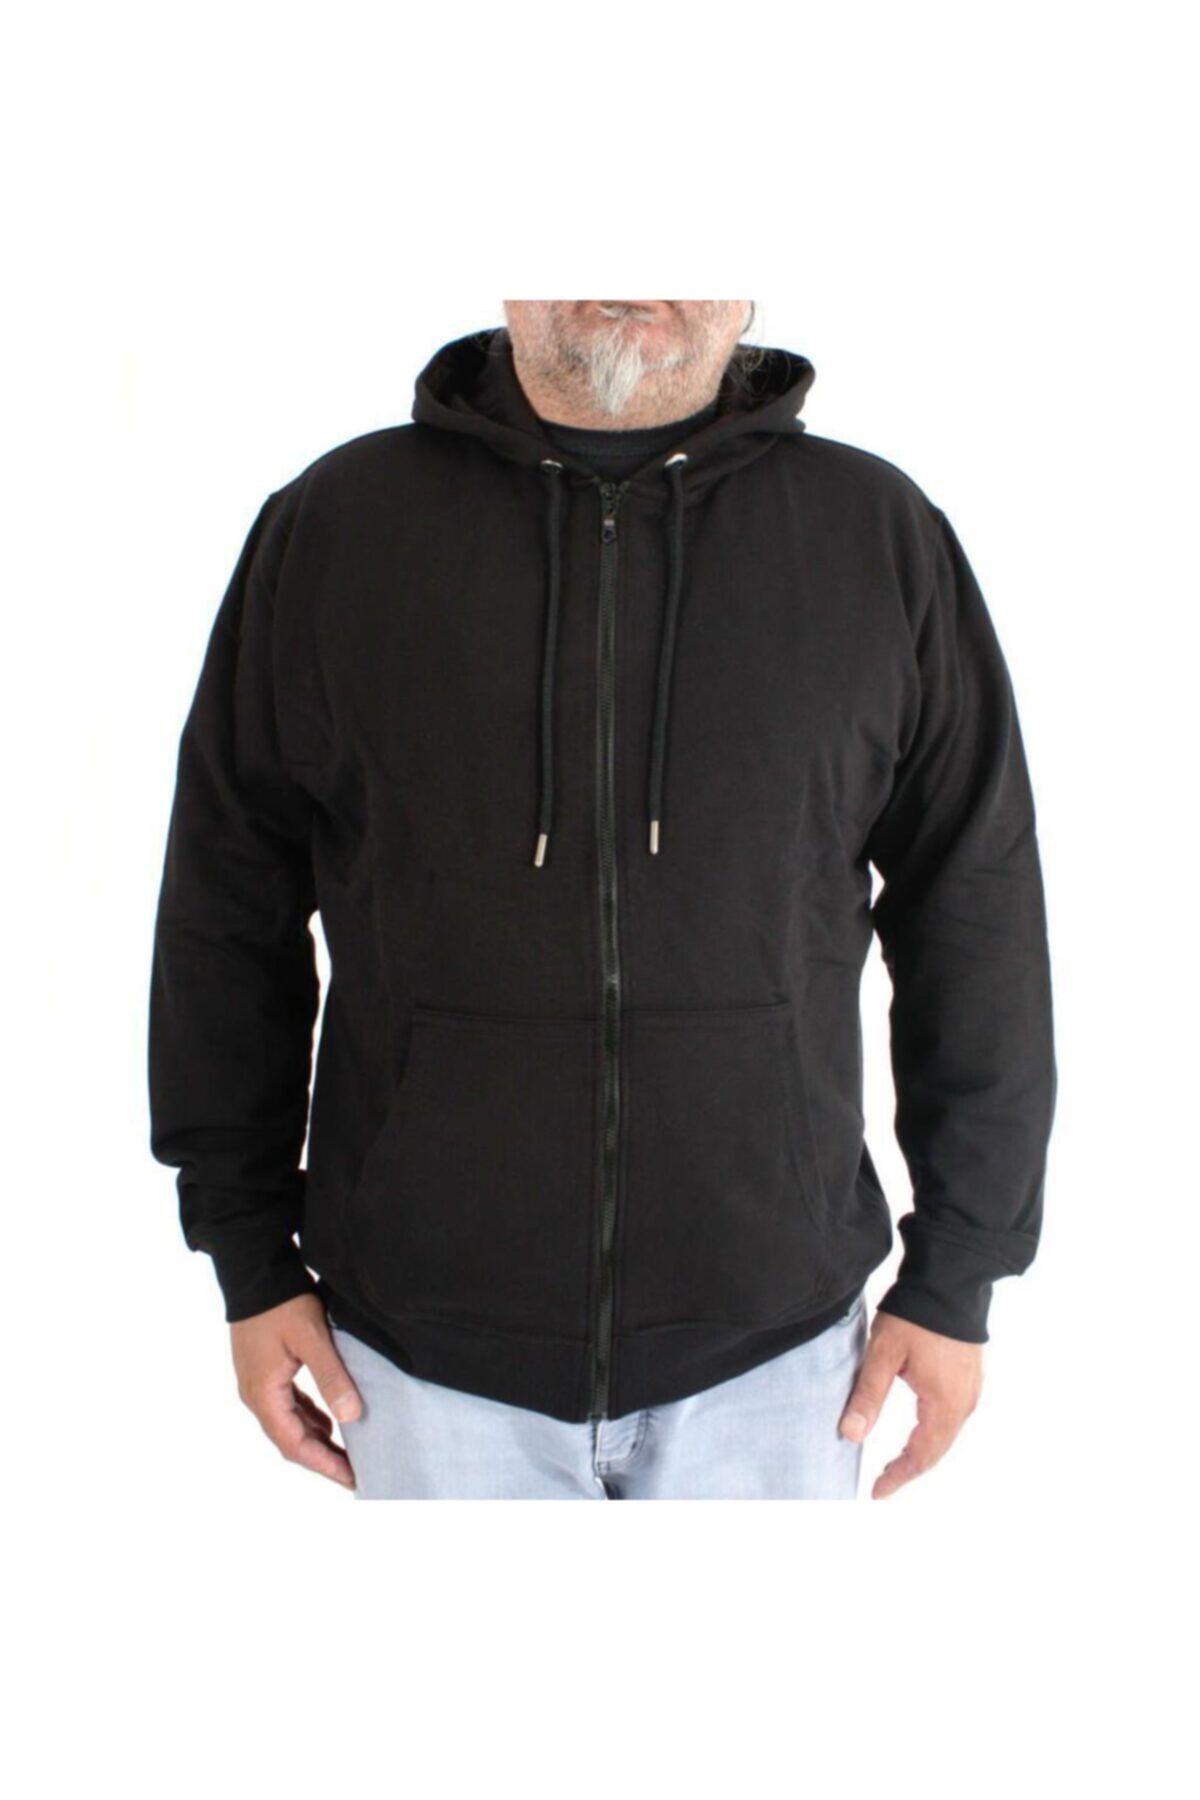 Bant Giyim Büyük Beden 4XL Fermuarlı Baharlık Siyah Sweatshirt